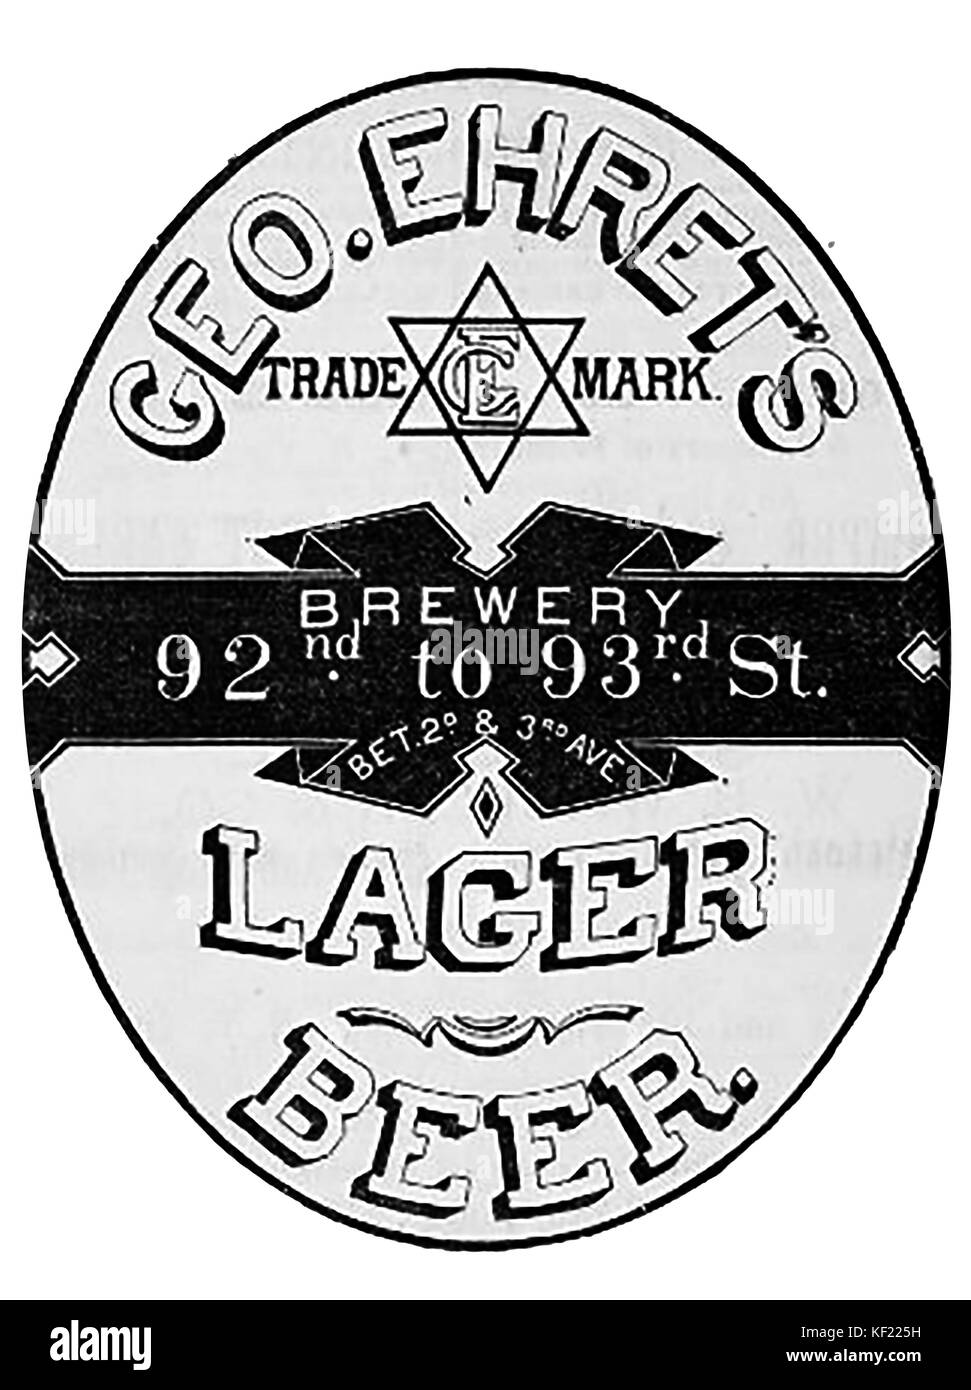 Eine 1890 im Viktorianischen USA Werbung für George Ehrets Pilsener Bier und Brauerei. - hexagramm - David Stern Marke - Jüdische? Stockfoto